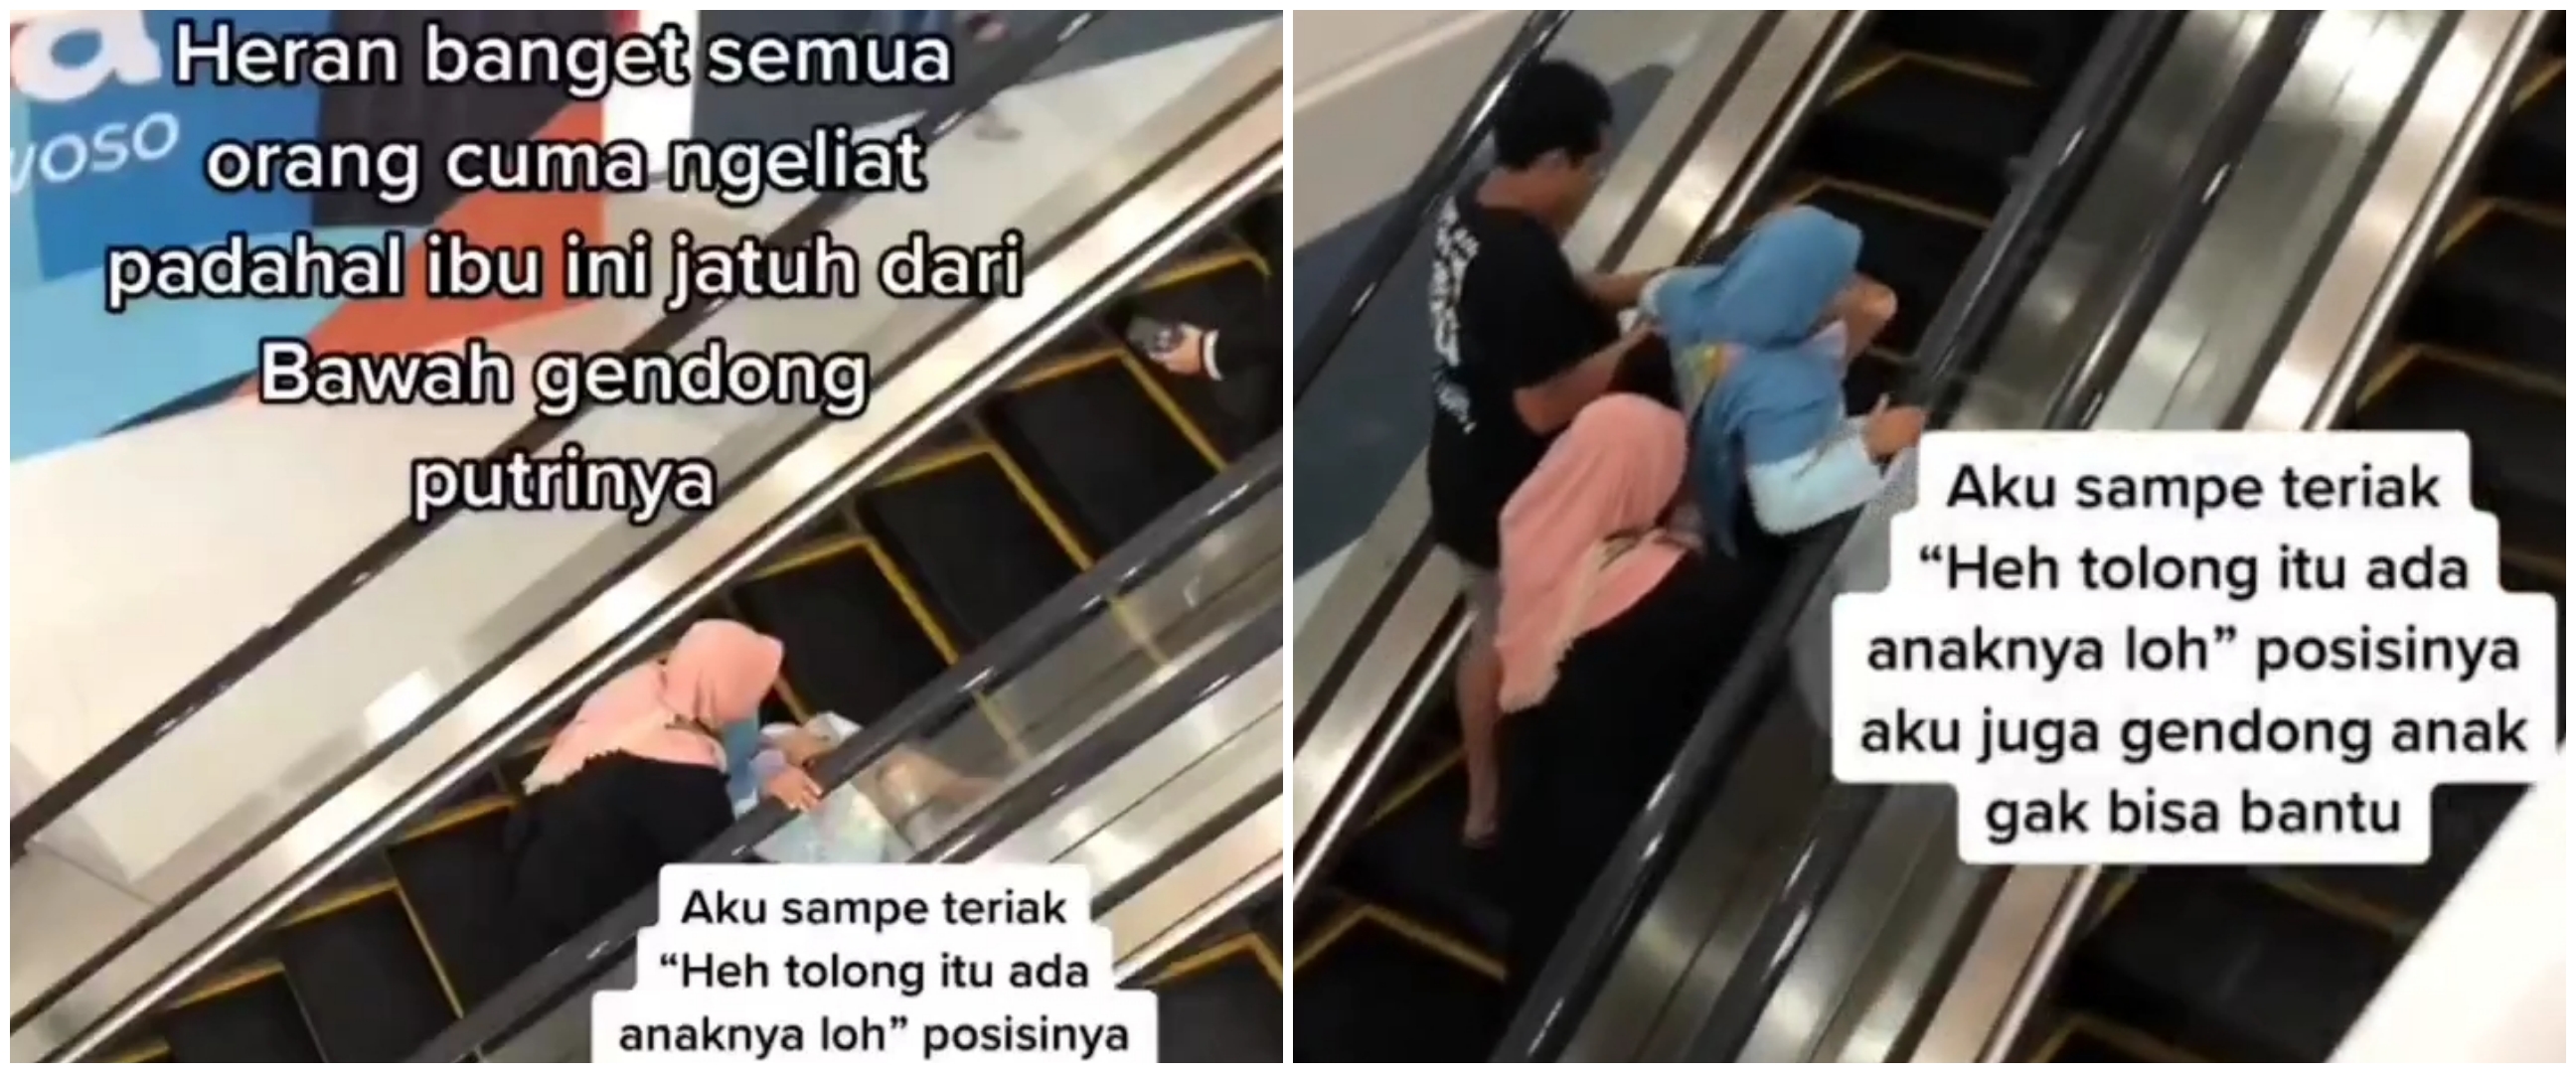 Aksi heroik pria bantu ibu dan anak nyaris jatuh di eskalator, salut